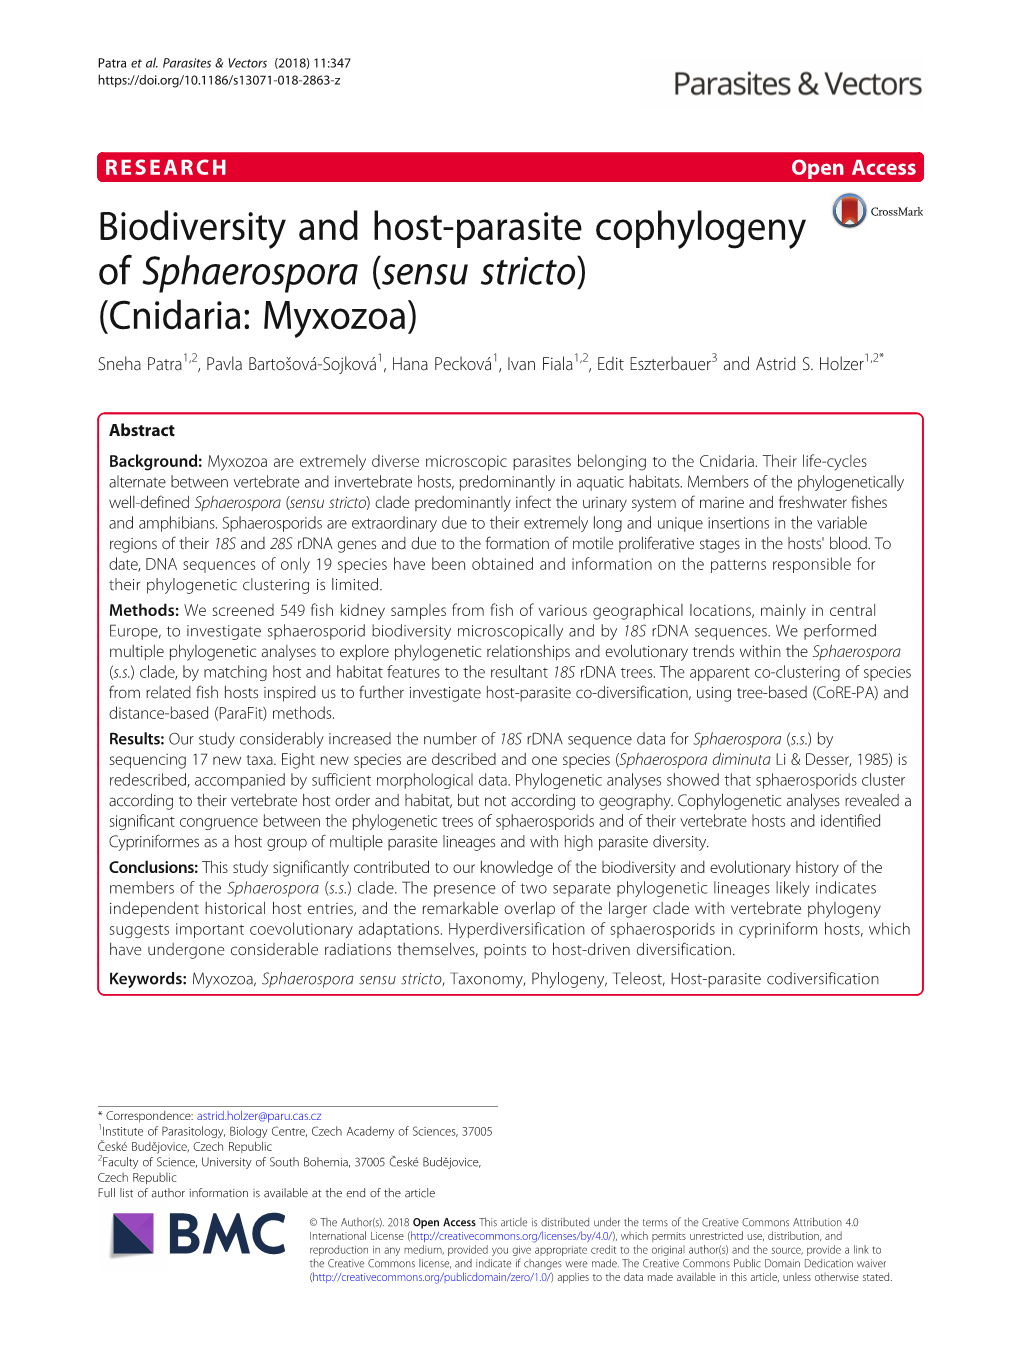 Biodiversity and Host-Parasite Cophylogeny of Sphaerospora